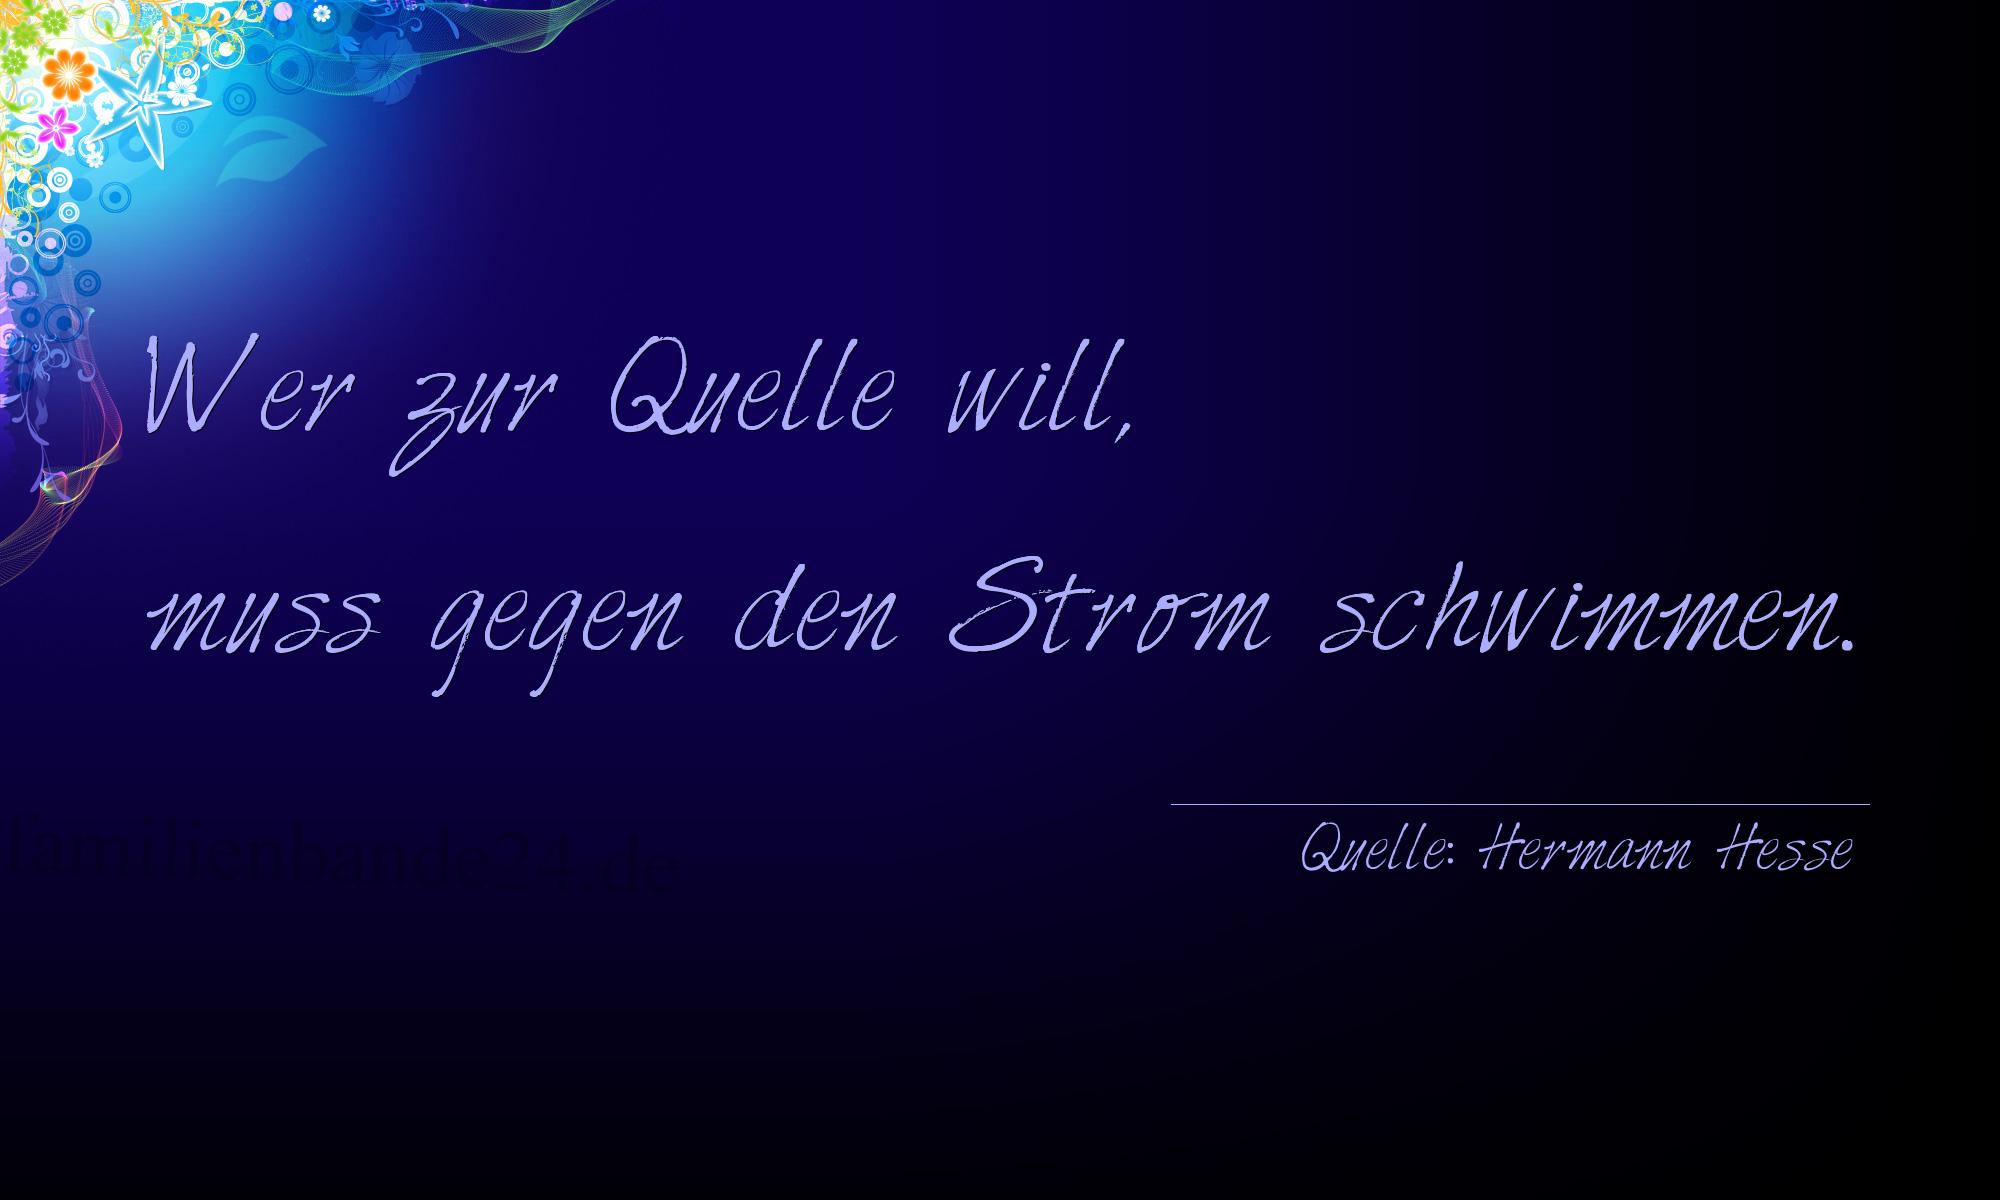 Aphorismus Nr. 1202 (von Hermann Hesse): "Wer zur Quelle will, muss gegen den Strom schwimmen." 